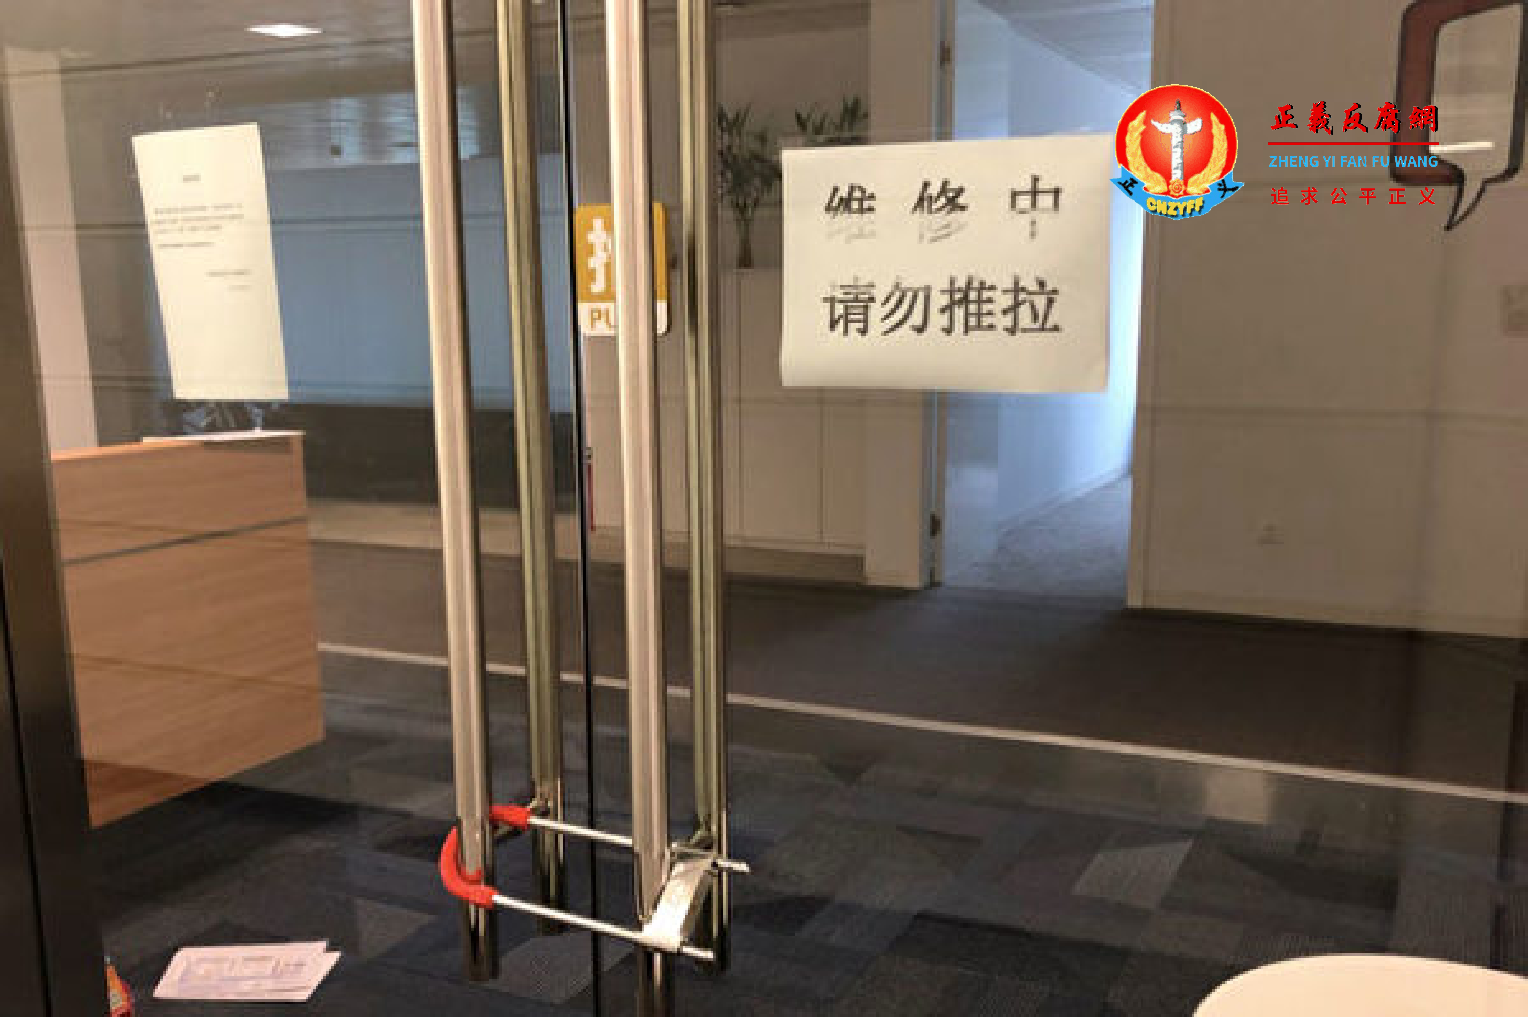 北京“华尔街英语”实体店已经停业。.png